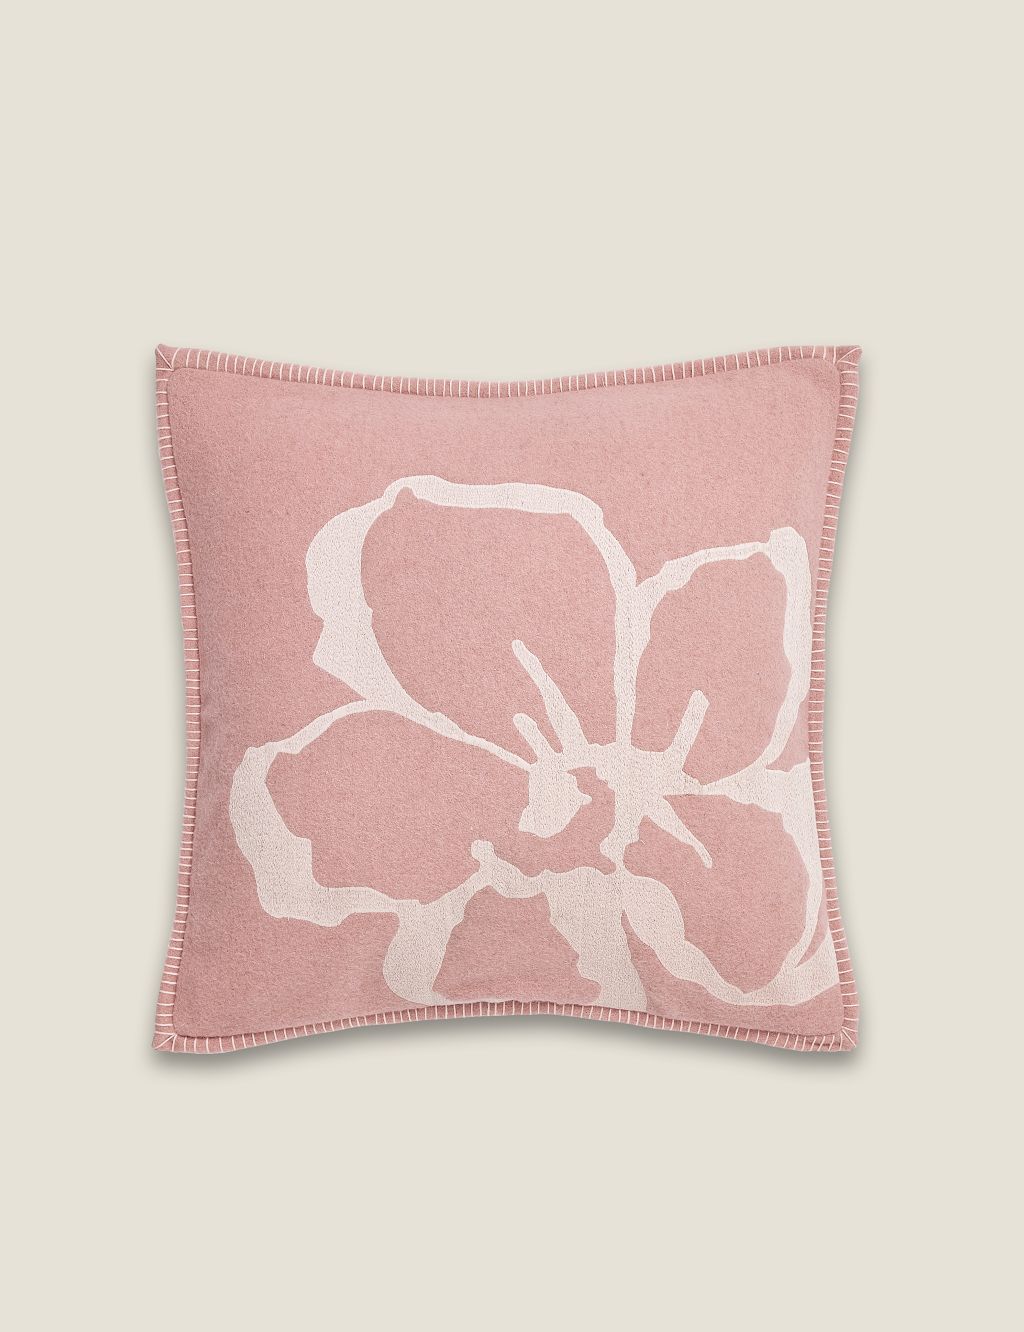 Magnolia Embroidered Cushion 3 of 3